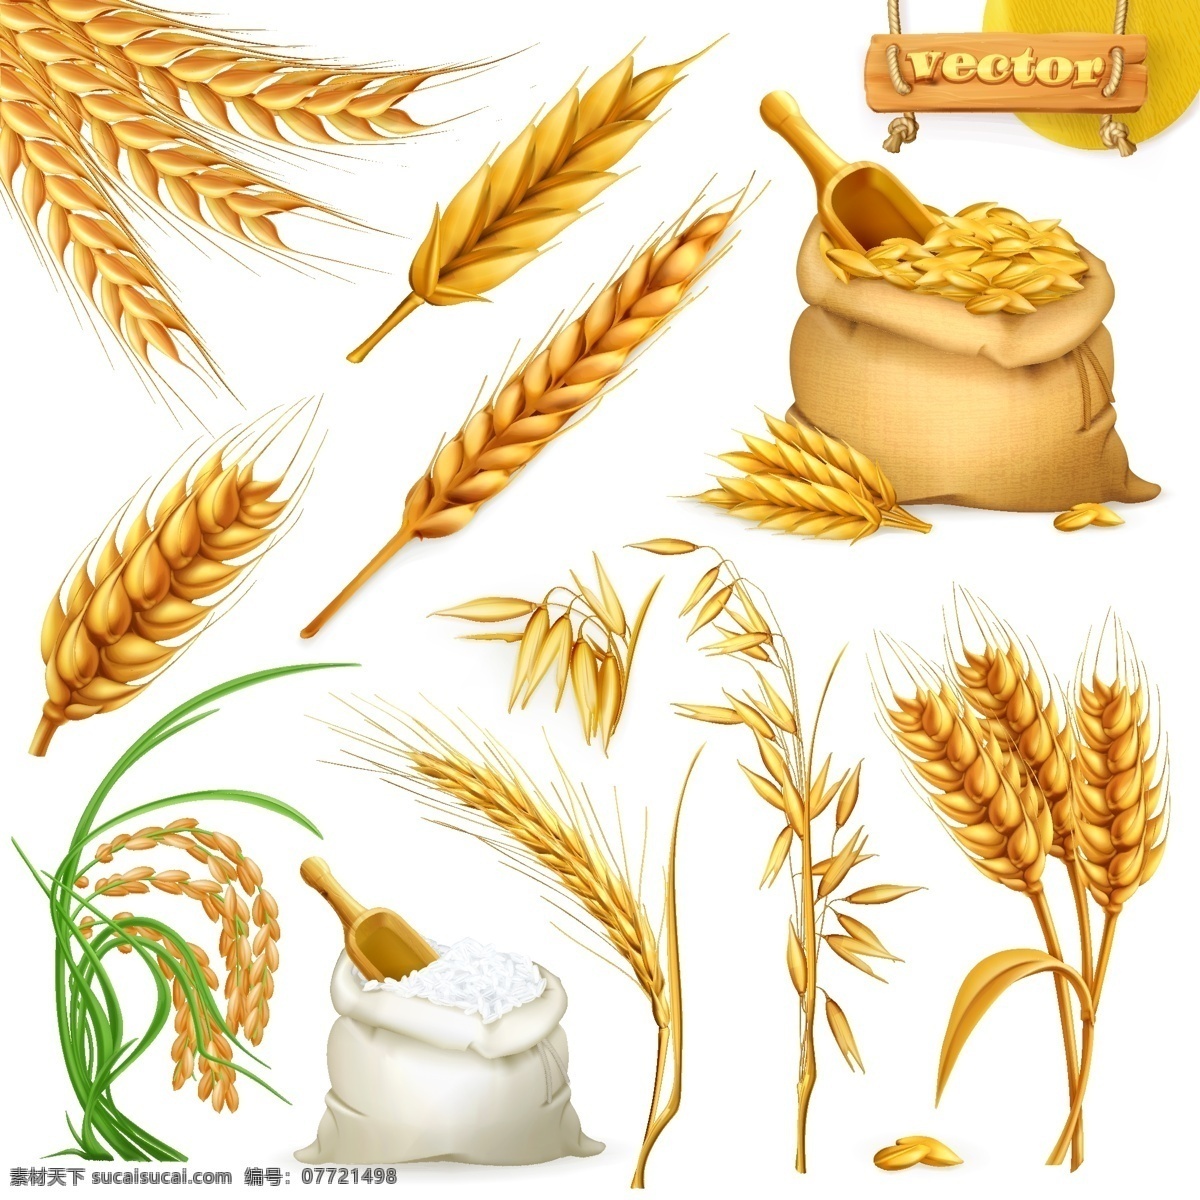 写实 小麦 制品 静物 农作物 丰收 面粉